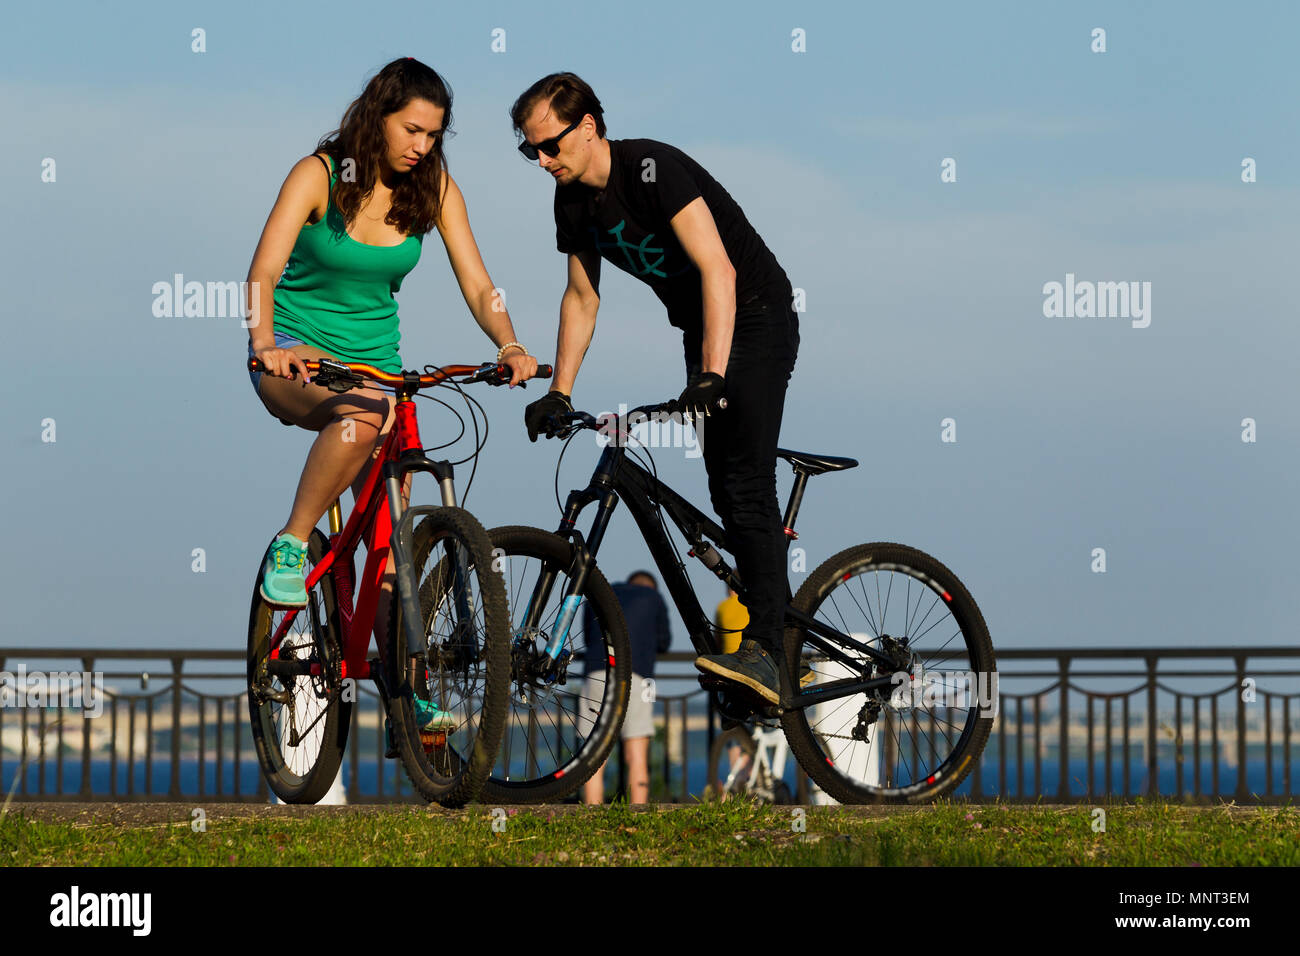 Das Mädchen und der junge Mann auf einem Fahrrad in der Stadt, beleuchtet durch Sonnenlicht Stockfoto